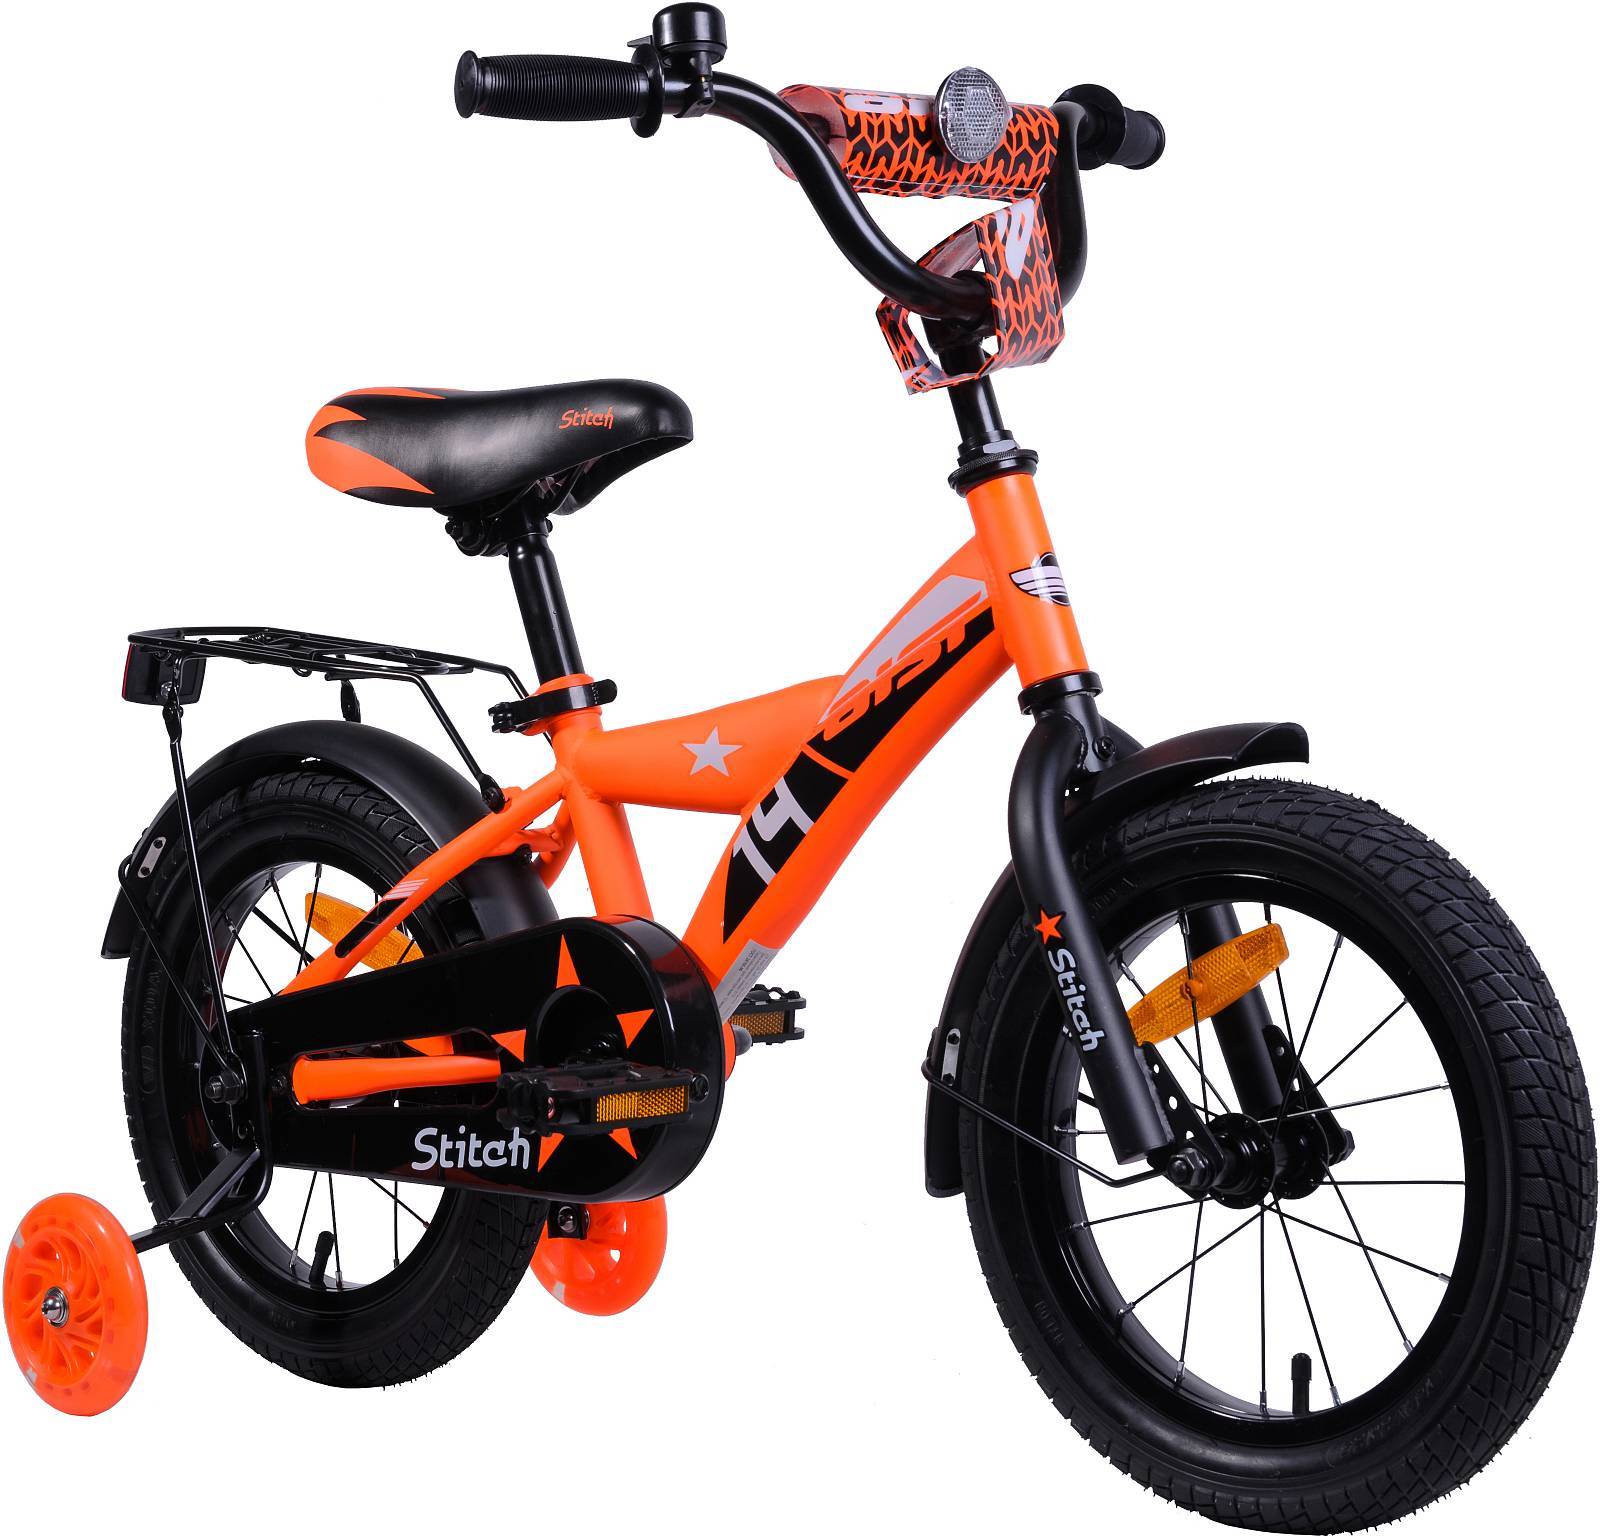 Велосипед STITCH 14 оранжевый 2019